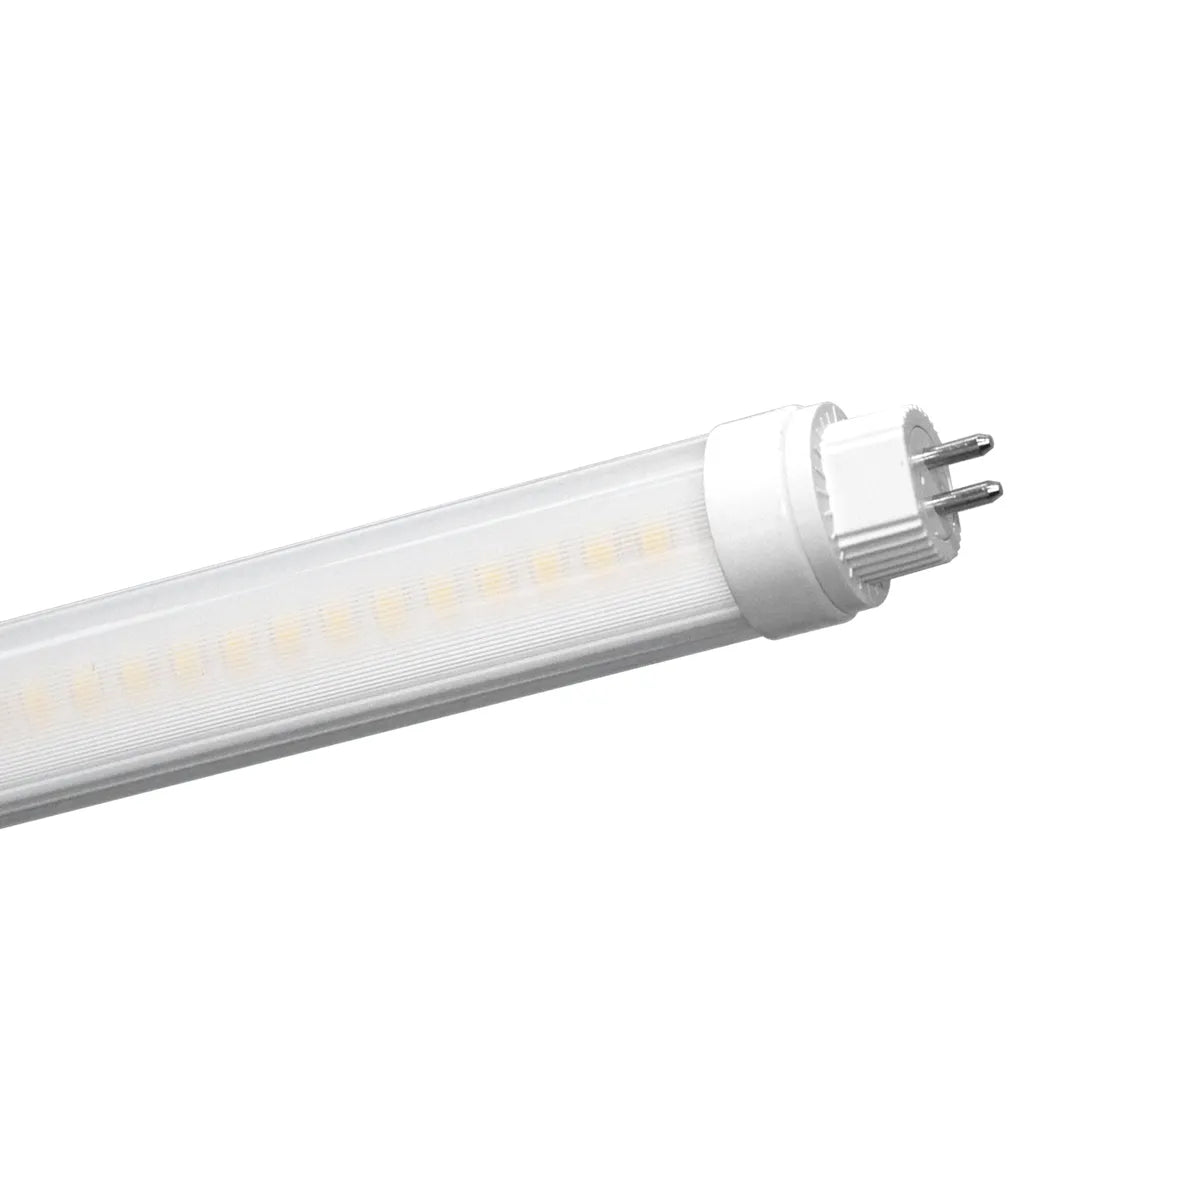 T5 LED TL-Röhre 1448 mm 200 lm/W drehbar, umschaltbare Wattzahl 16/24 W – Xtreme Lumen